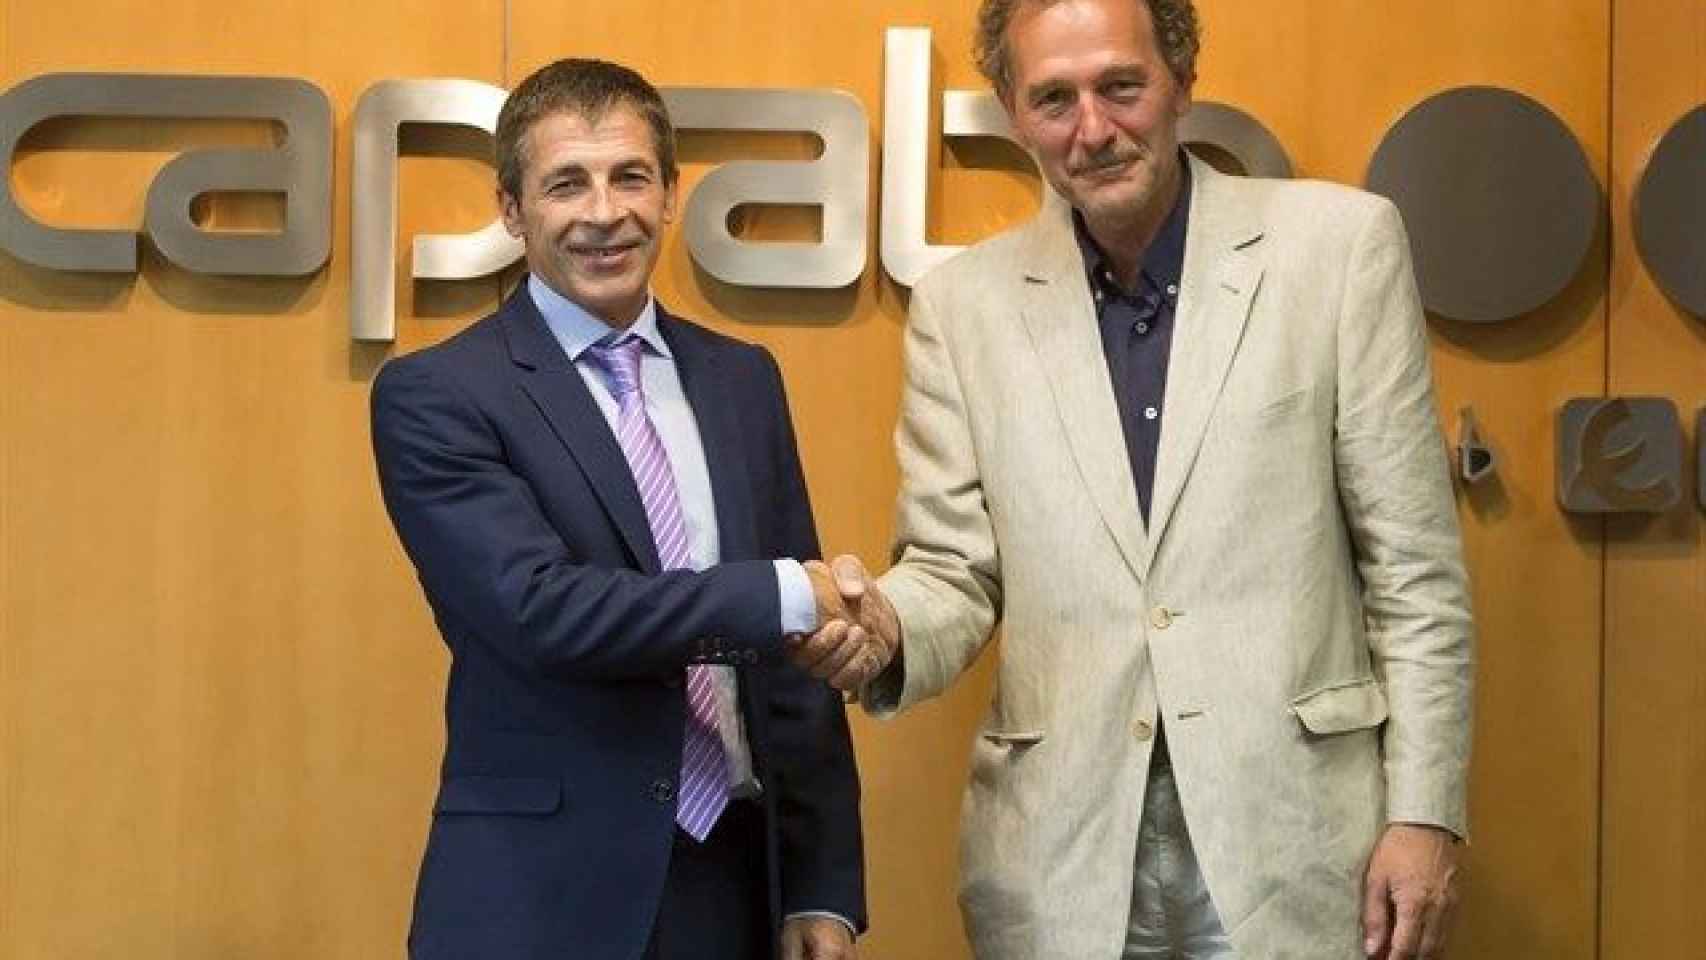 Martín Gandiaga, de Caprabo, y Toni Espinal, de Ampans / EUROPA PRESS